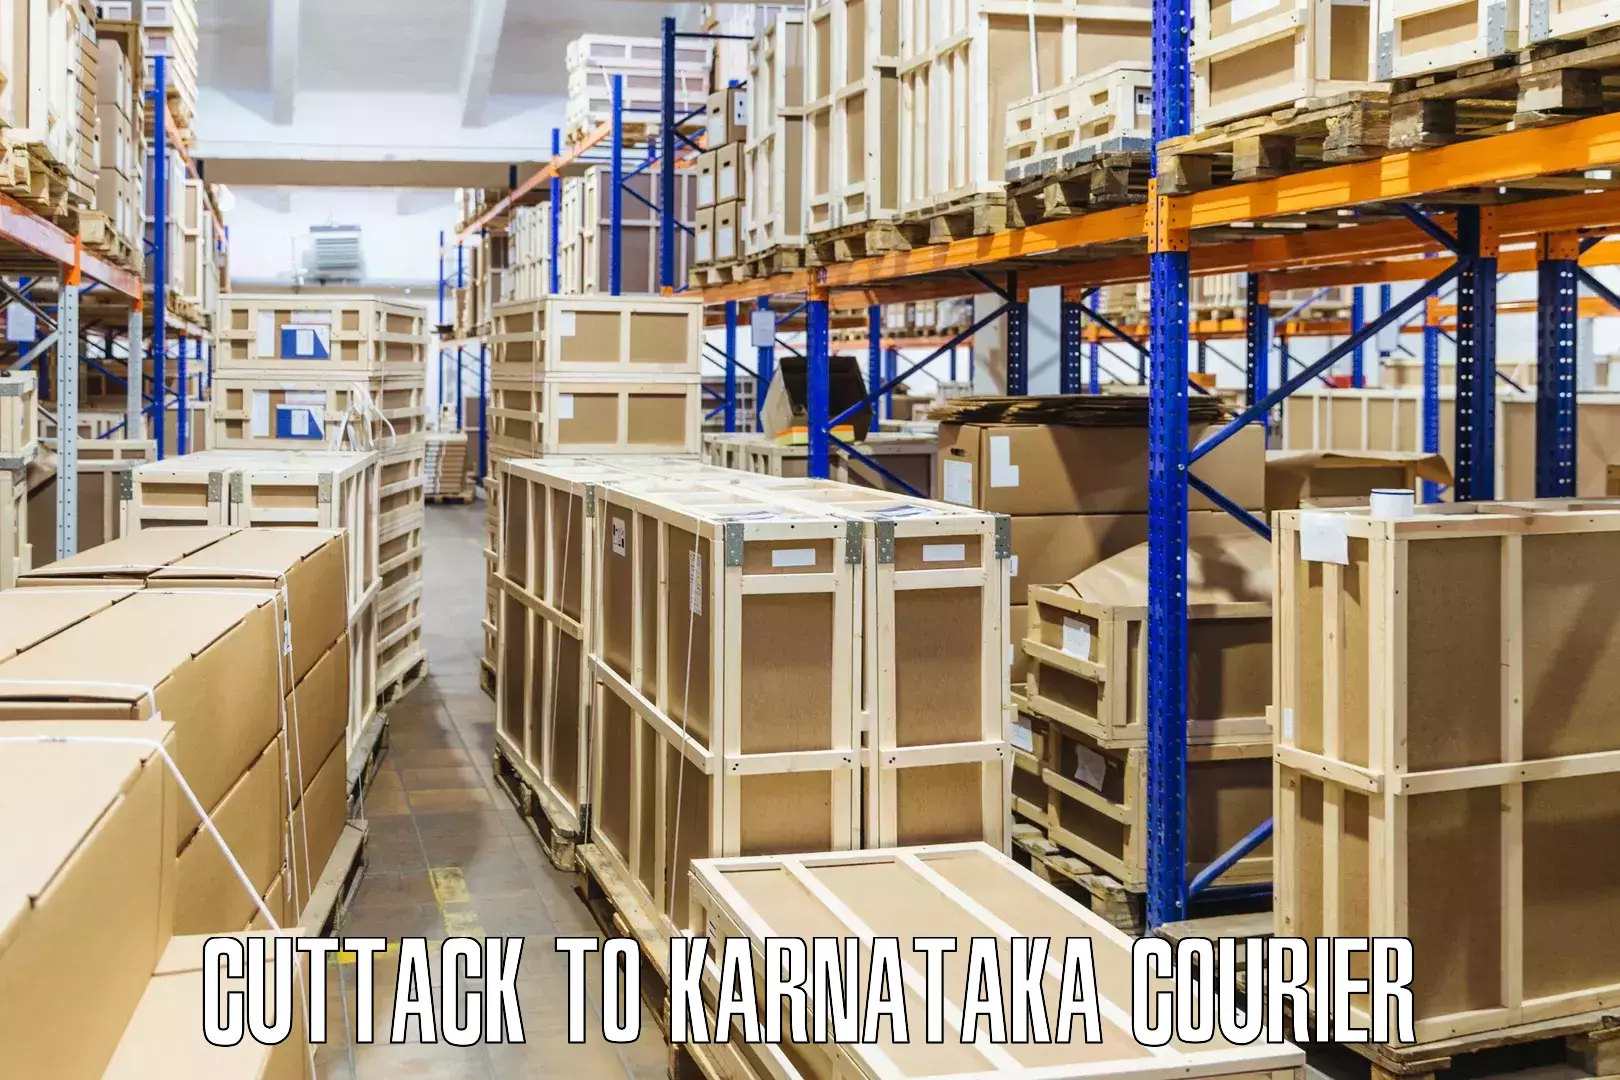 Efficient freight service Cuttack to Karnataka